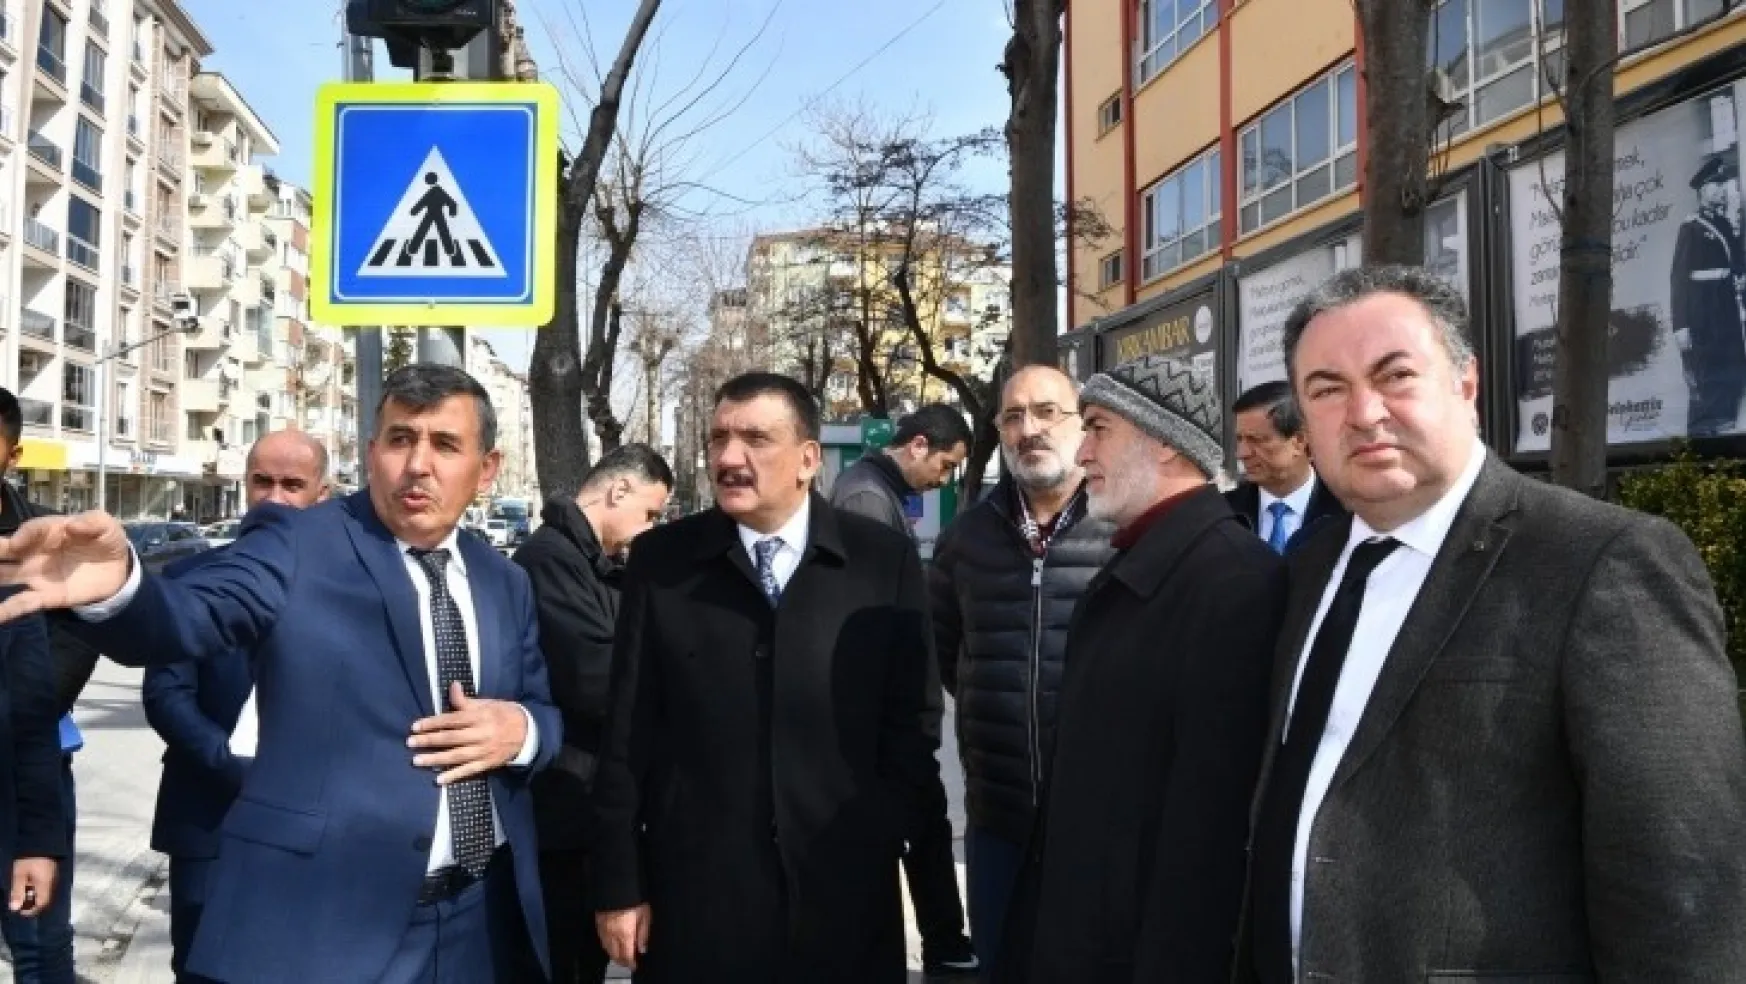 Başkan Gürkan Sivas Caddesinde incelemelerde bulundu